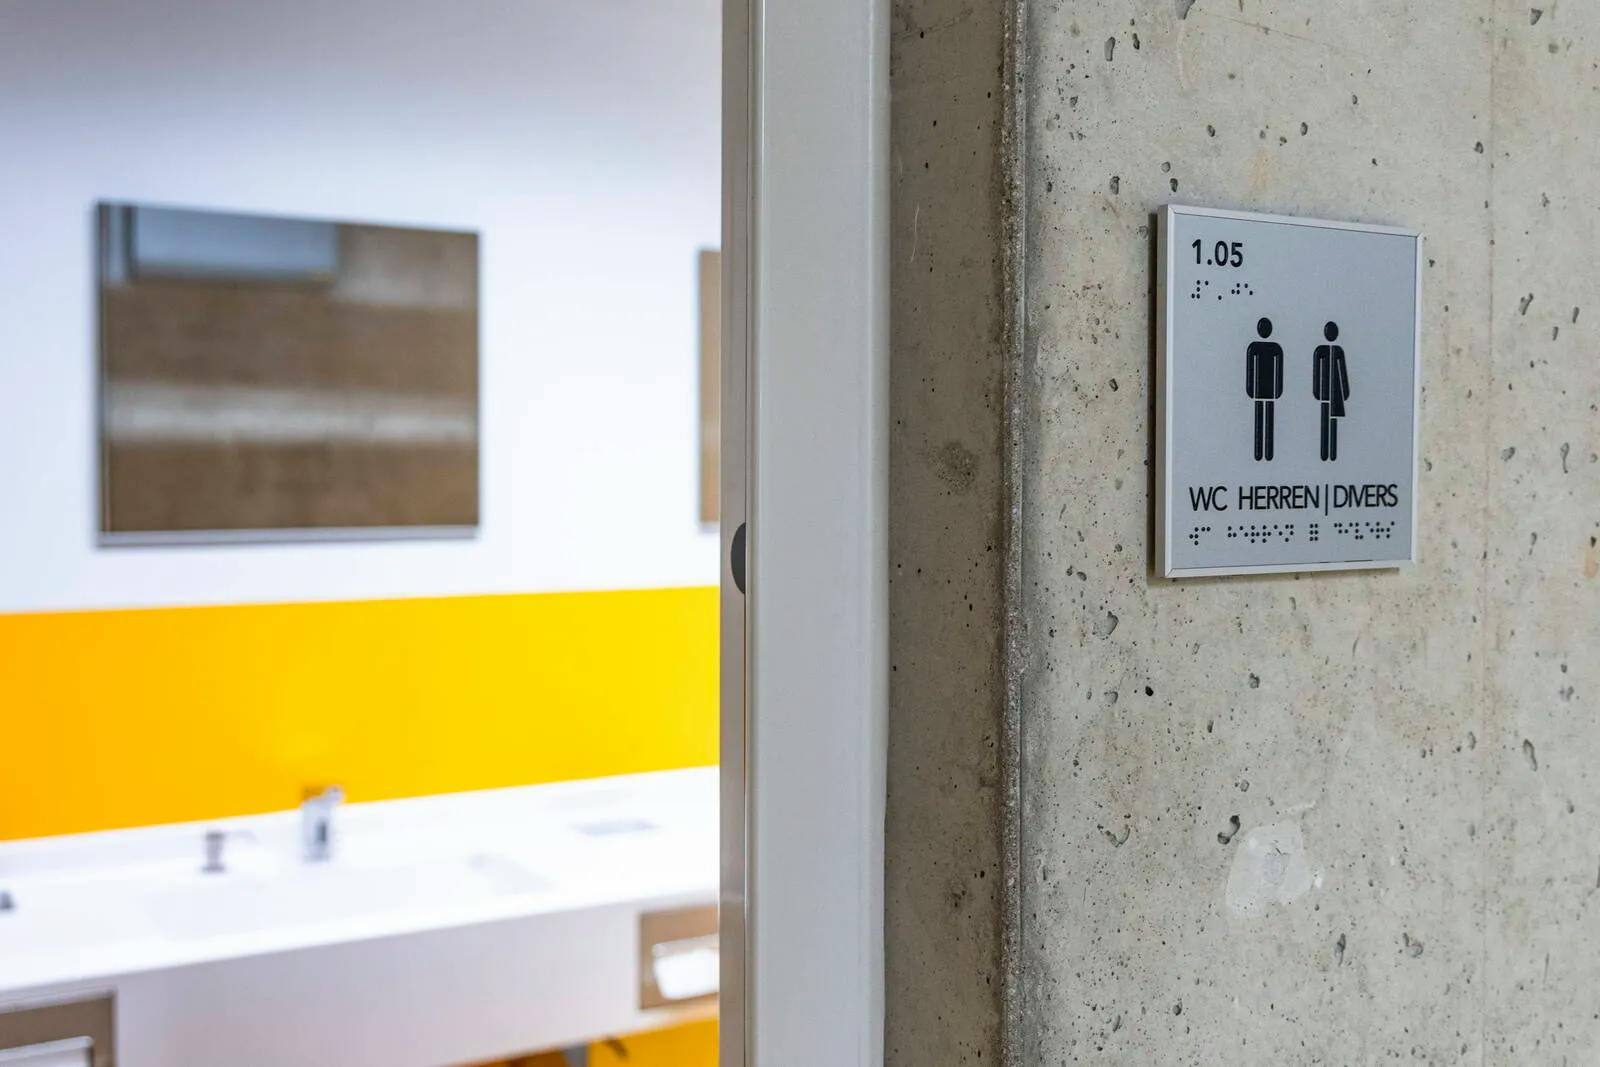 Nur vier diverse Personen in Sachsen, aber 23 genderneutrale Toiletten an TU Dresden